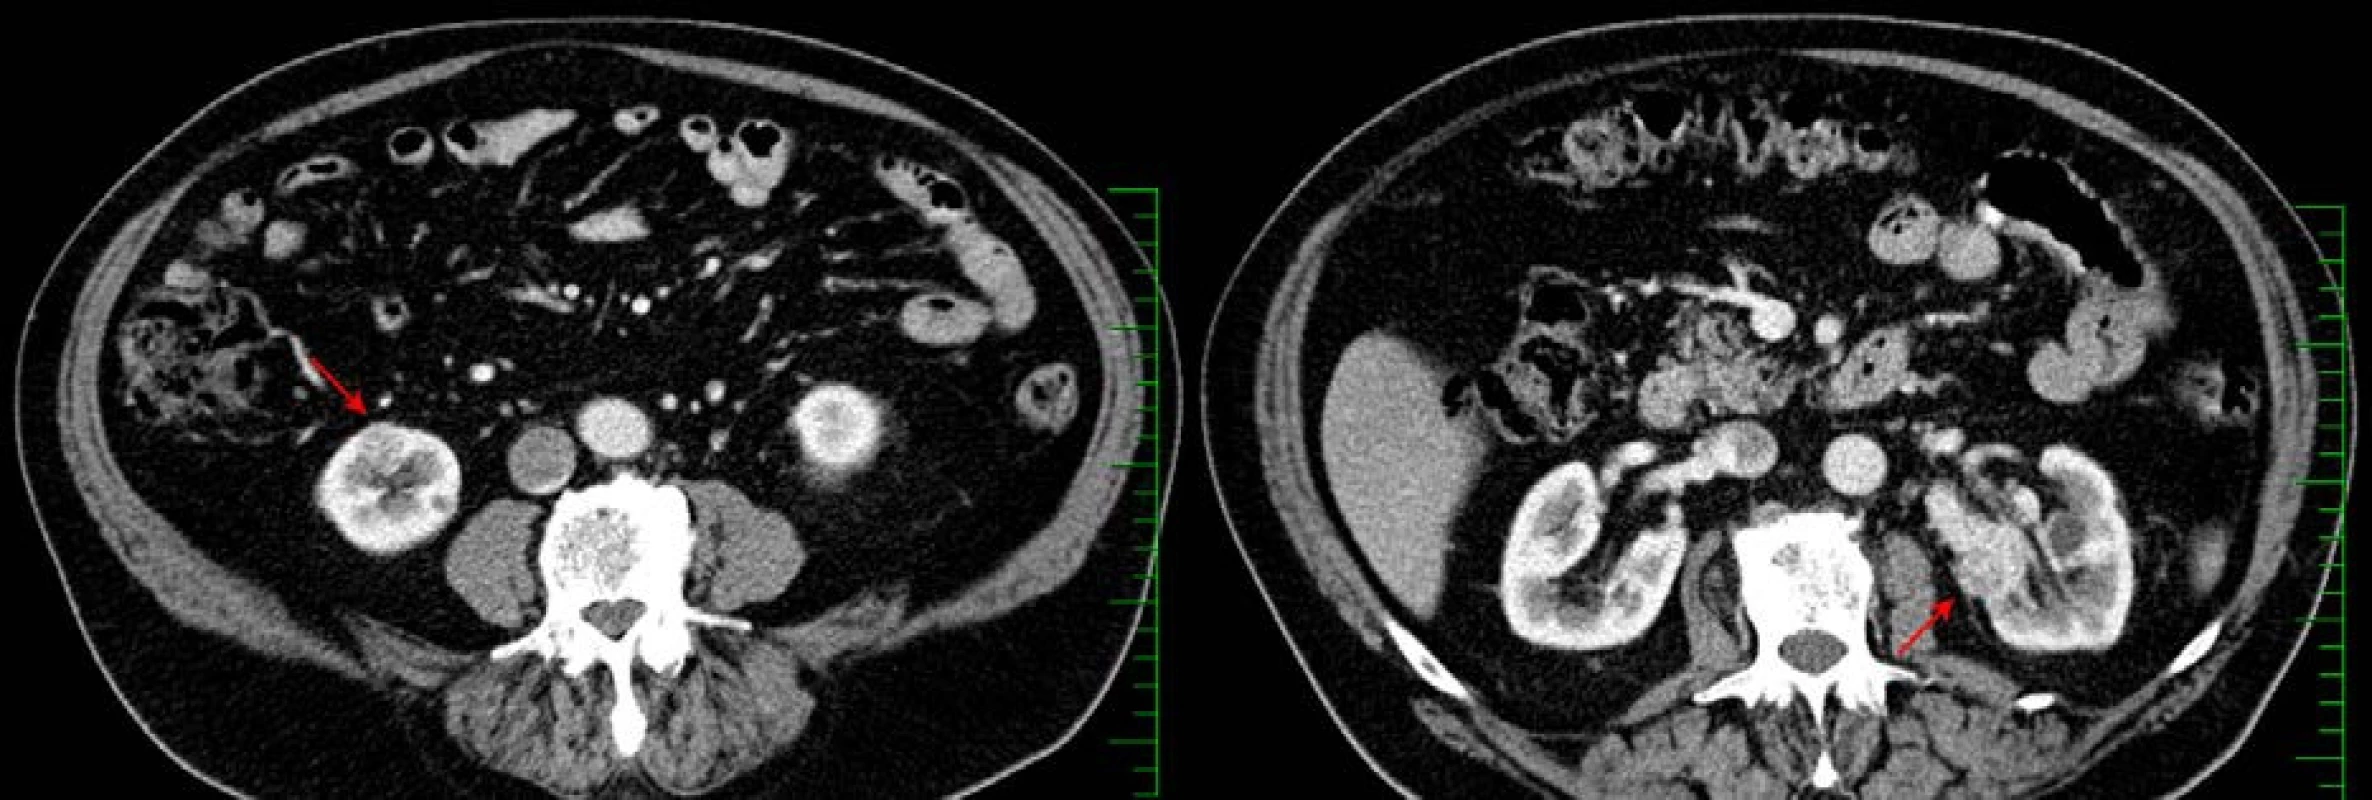 CT, transverzální řez, arteriální fáze: bilaterální světlobuněčný renální karcinom pT1a (červené šipky)
Fig. 3. CT scan, axial section, arterial phase: bilateral clear cell renal cell carcinoma pT1a (red arrows)